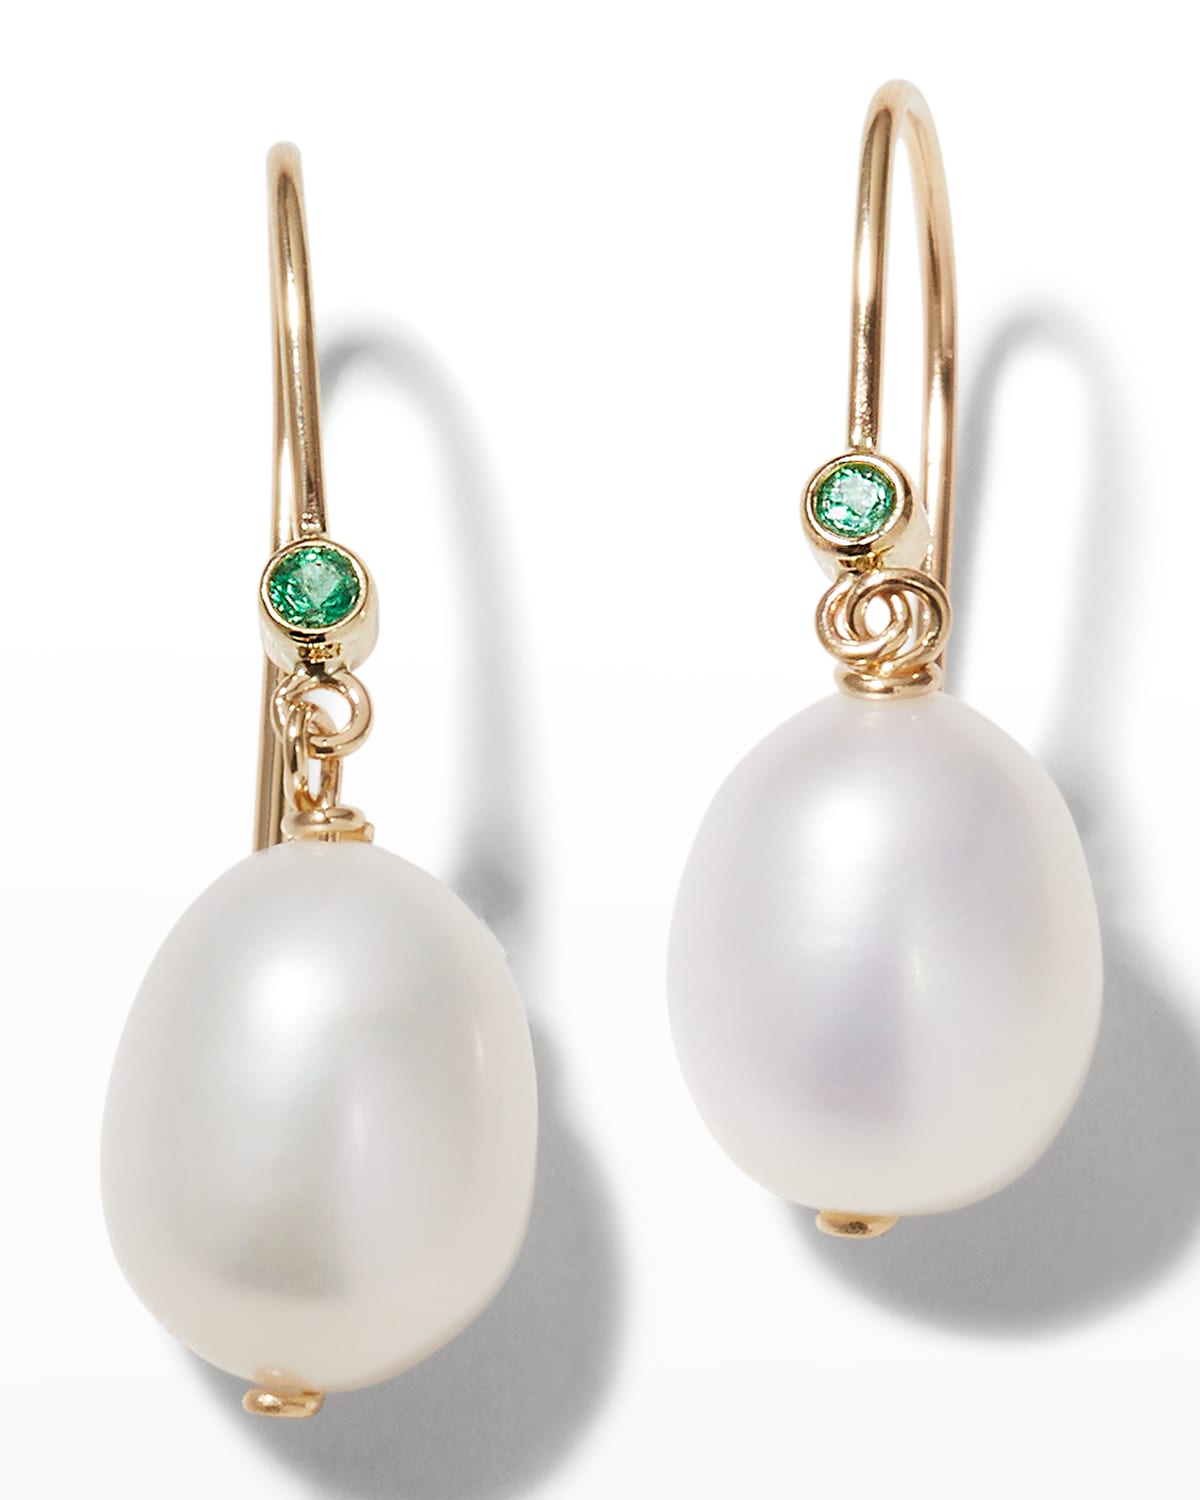 10-11mm White Baroque Pearl Bow-Knot Pendant Zircon Earring 18k Hook Luxury 